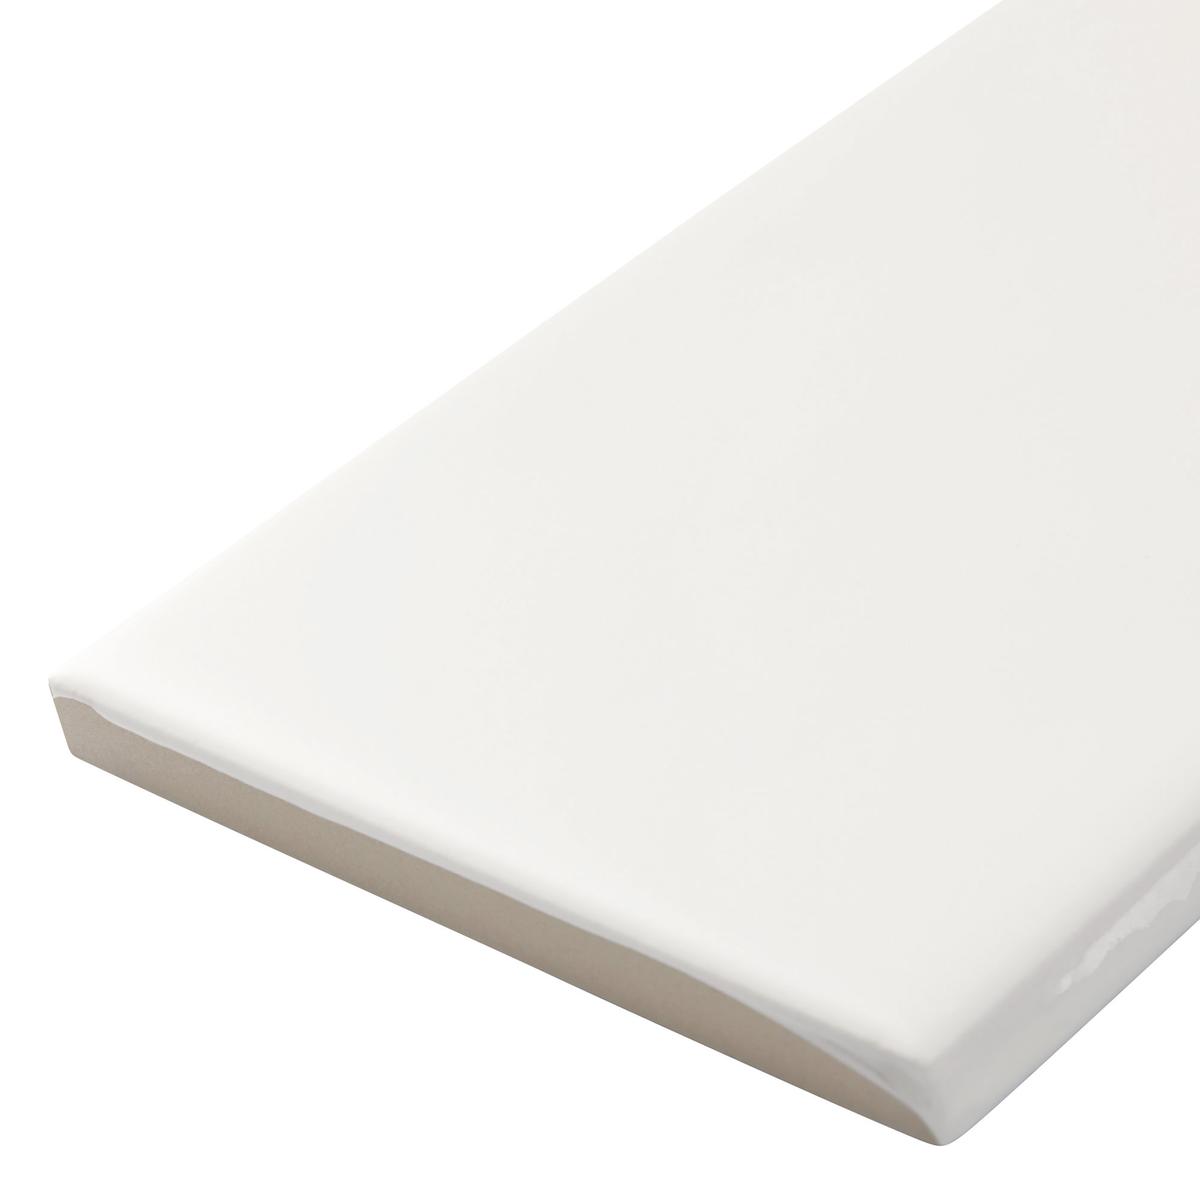 Carrelage aspect brique couleur blanche épurée sans motifs dimensions 8.6x26.2 cm